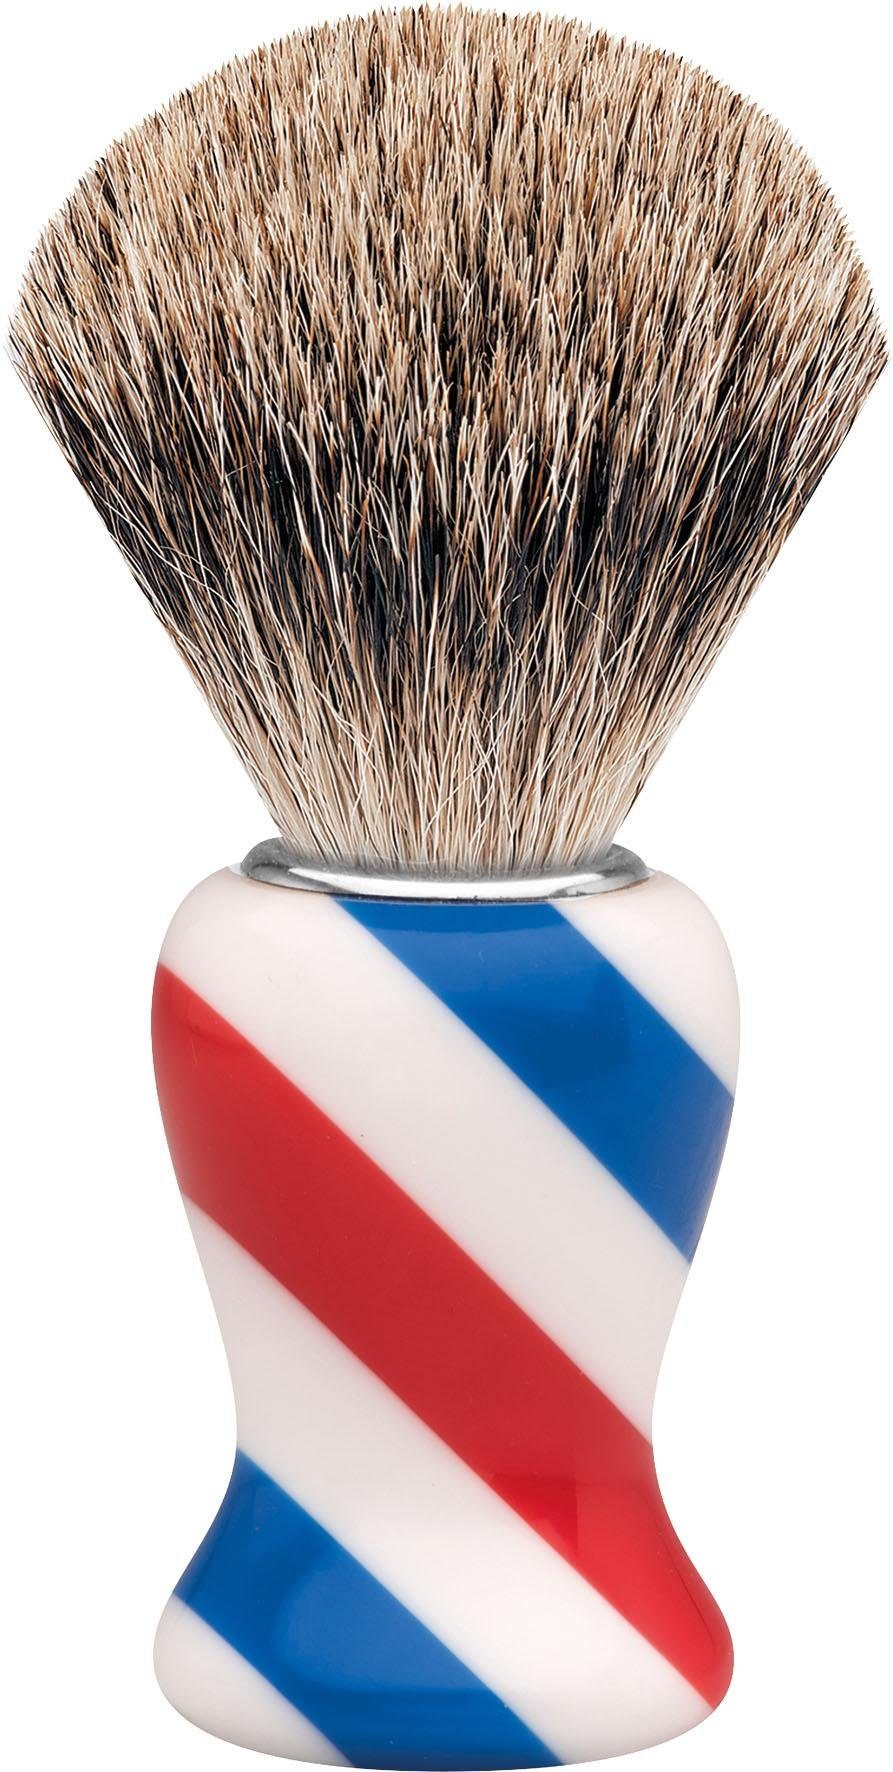 Rasierpinsel M, Design/Stripes Barbershop ERBE Dachshaar,